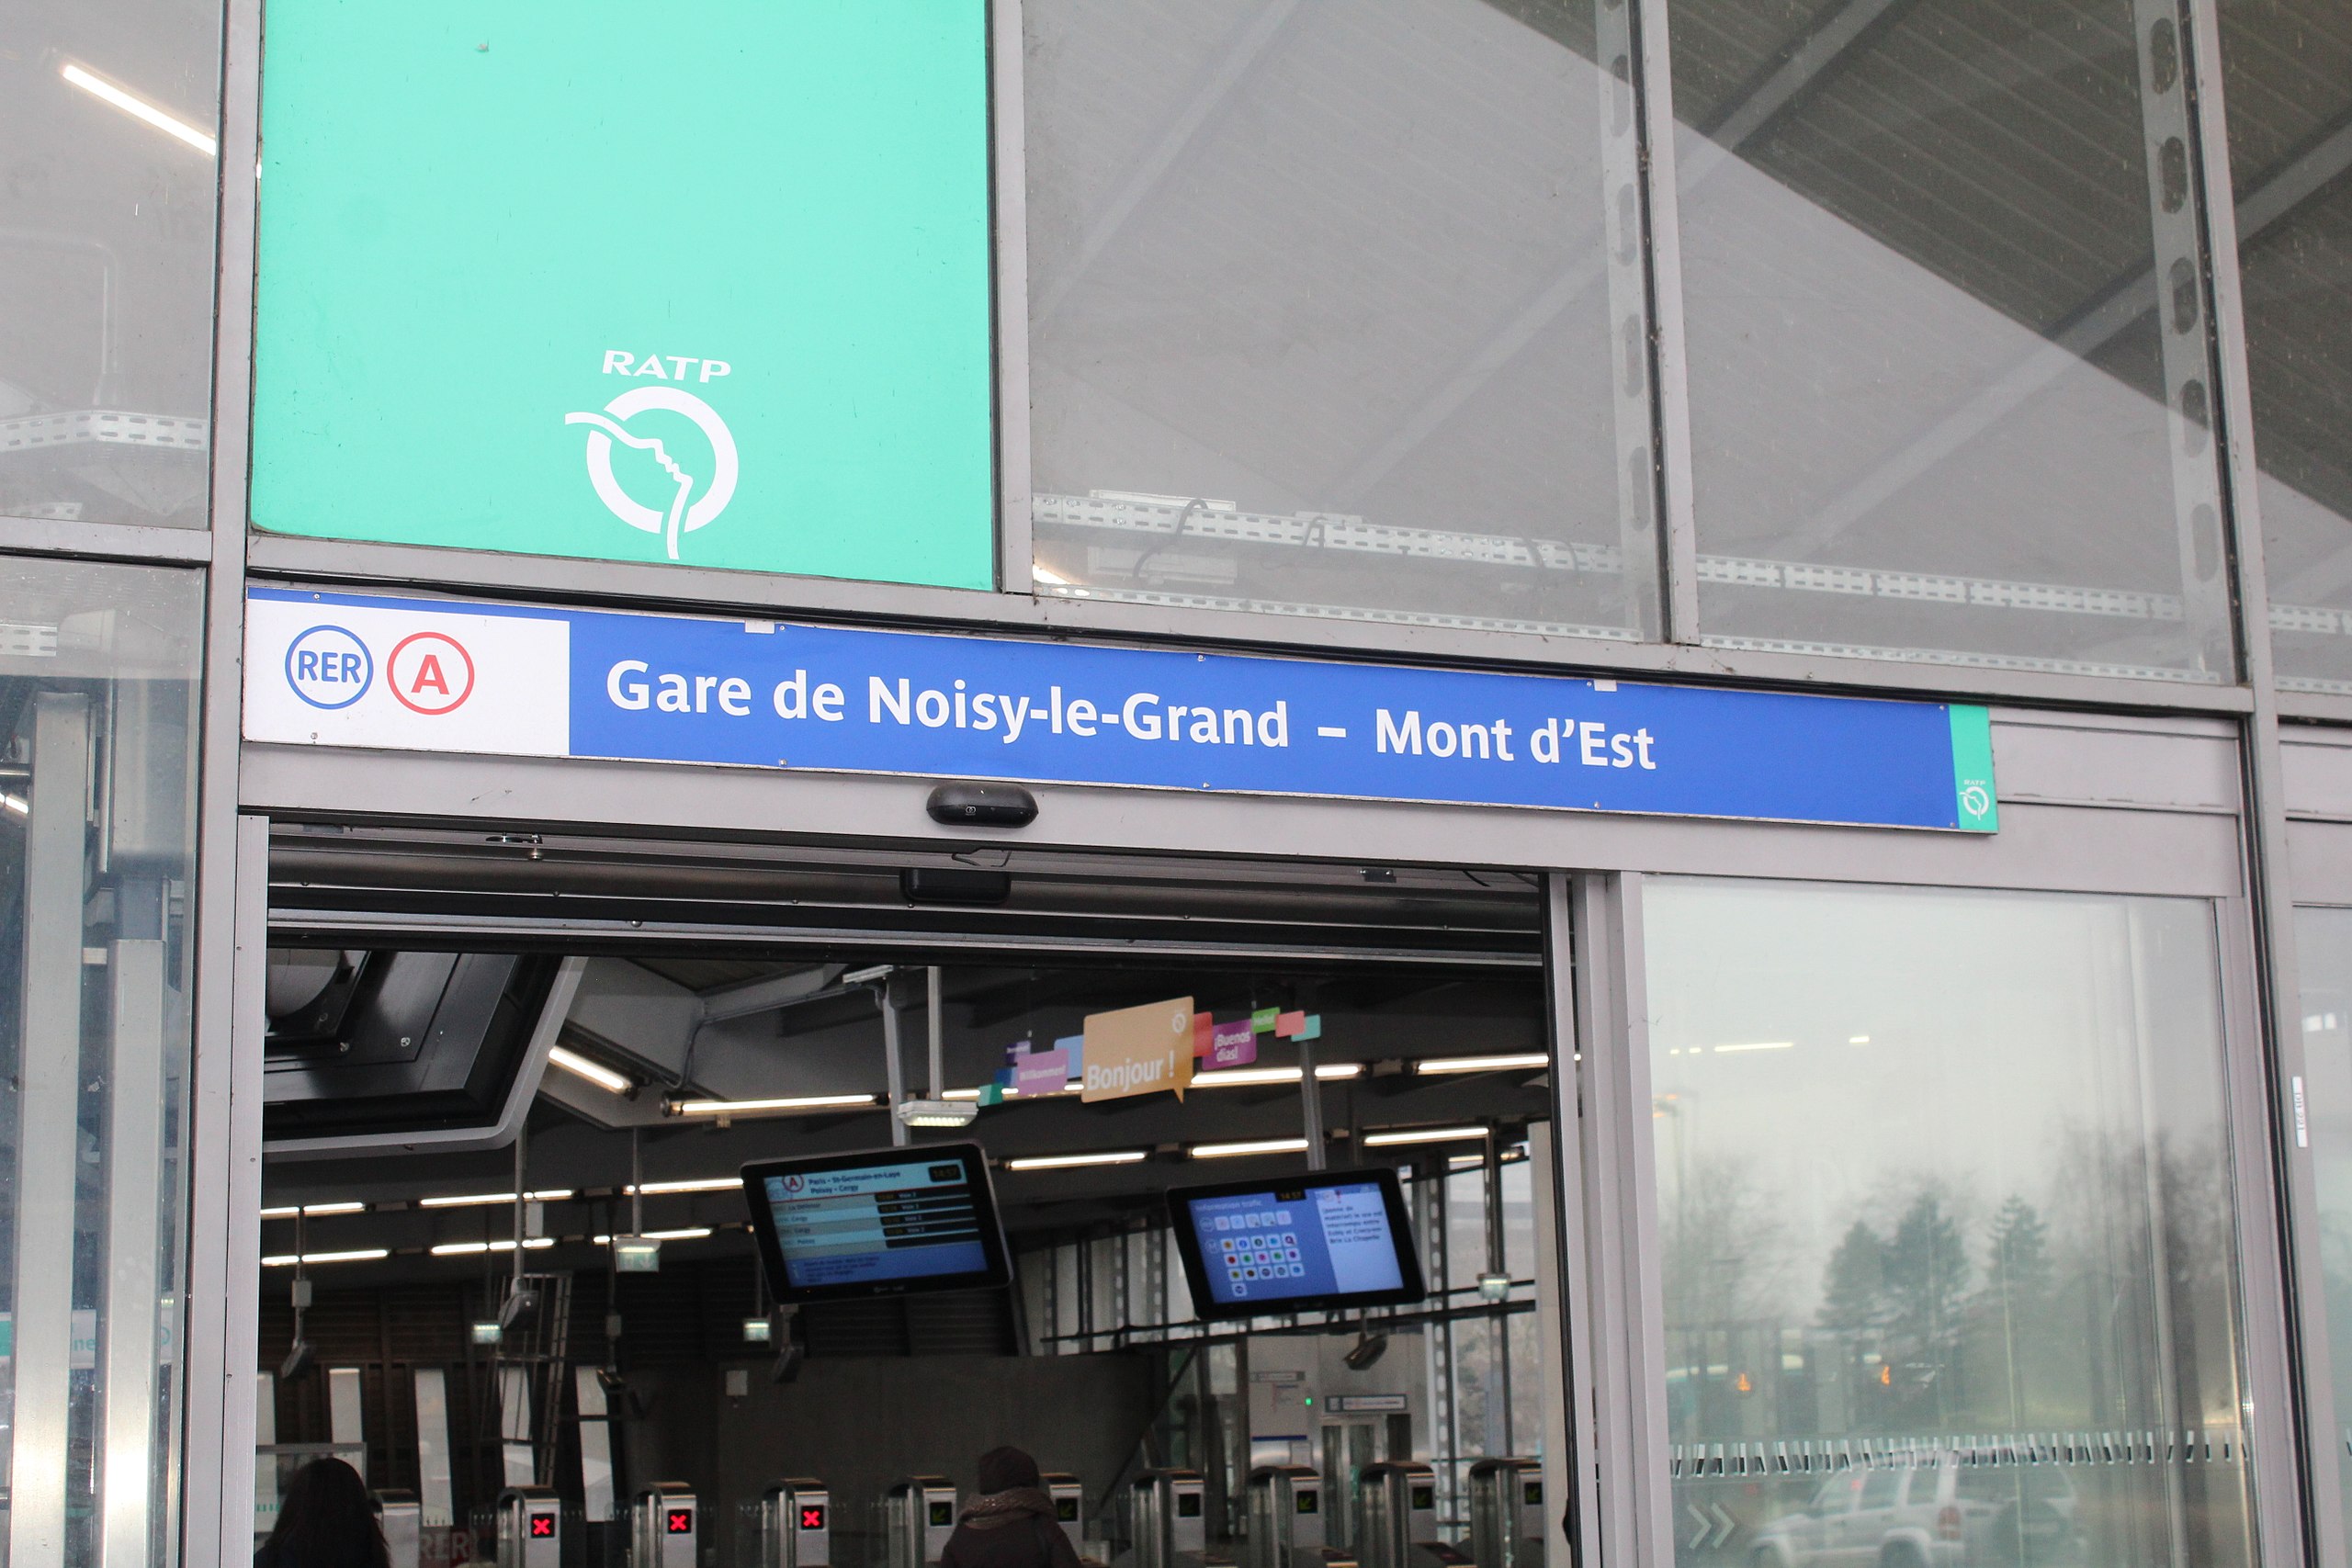 File Gare Rer Noisy Grand Mont Est 4 Jpg Wikimedia Commons